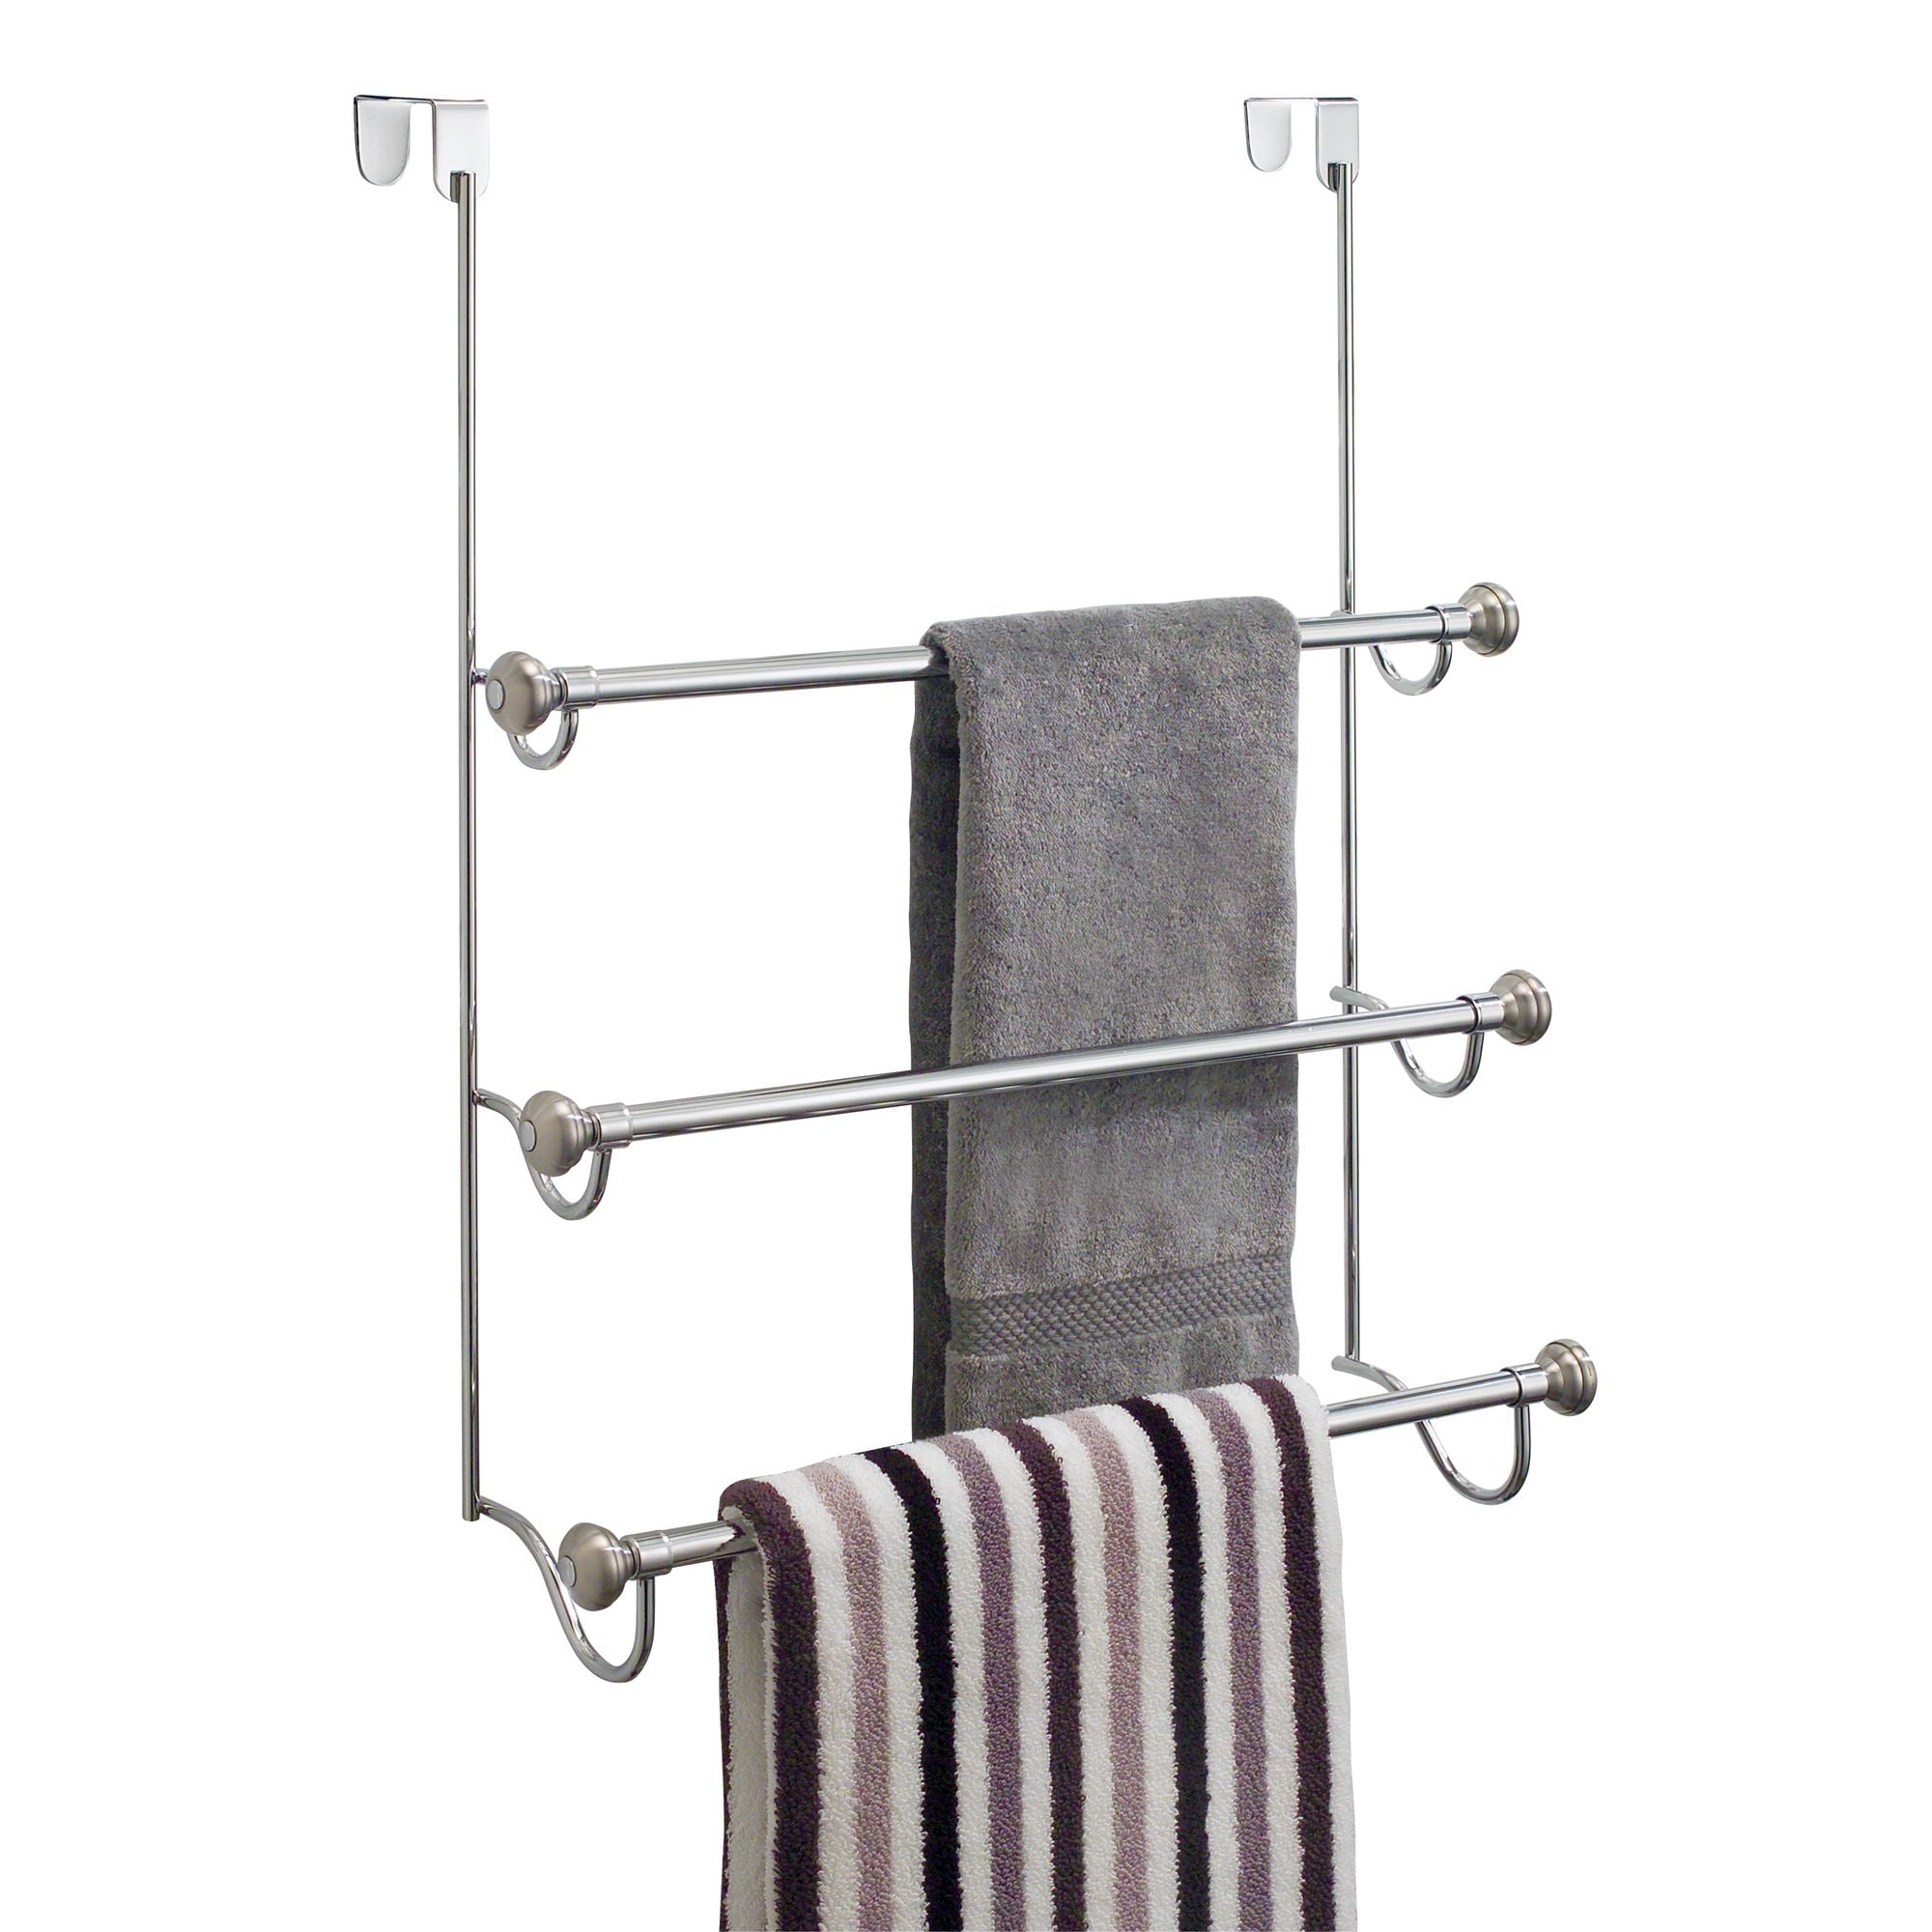 The Shower Door Hanging Towel Rack, Towel Hangers For Bathroom